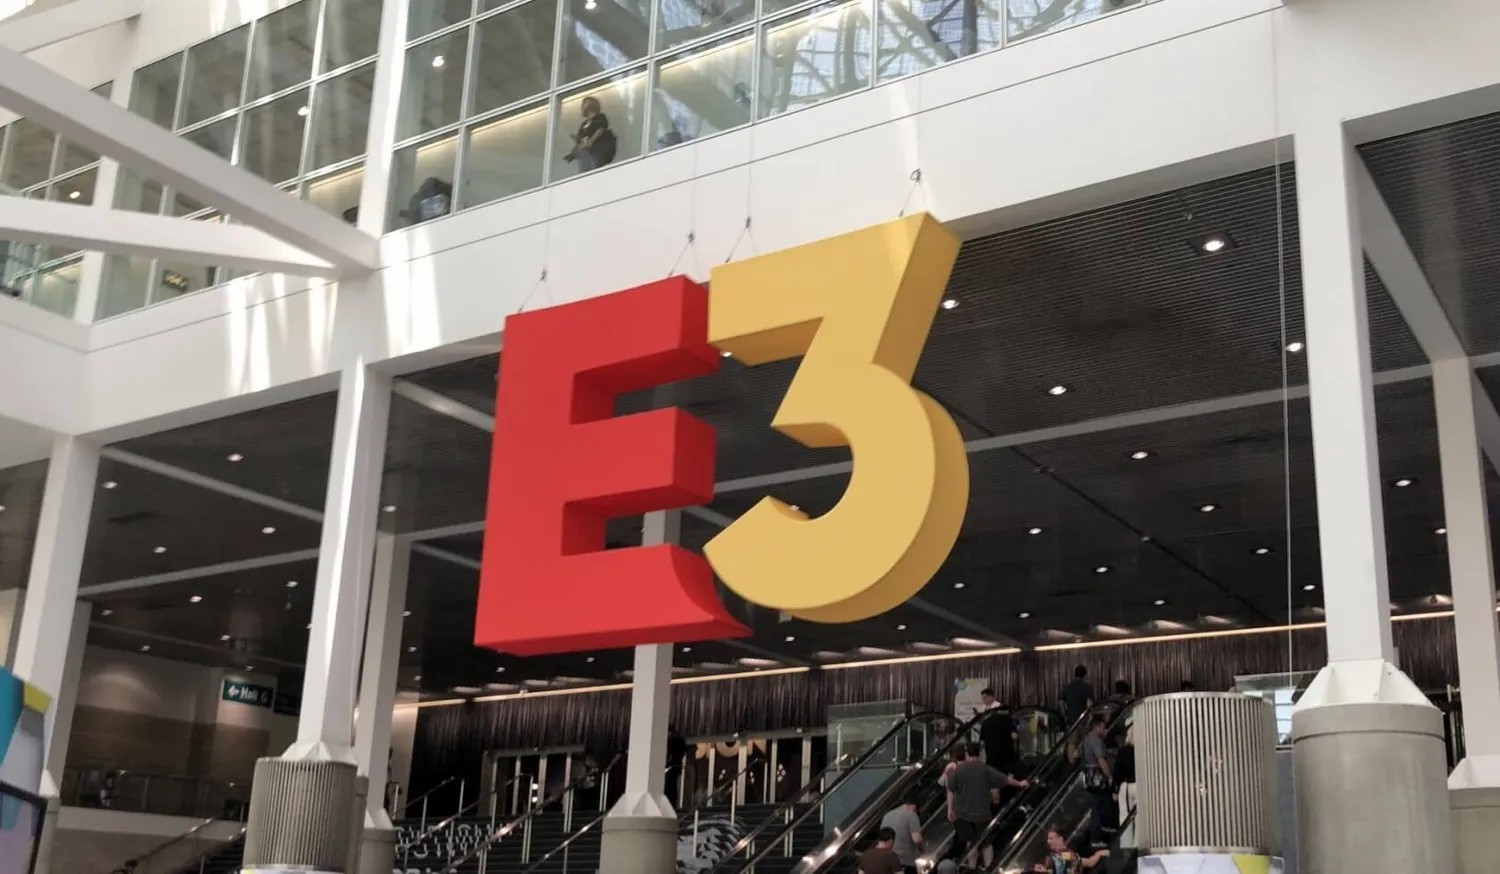 E3展会将在2025年完全重塑 2024年换地点举办_1